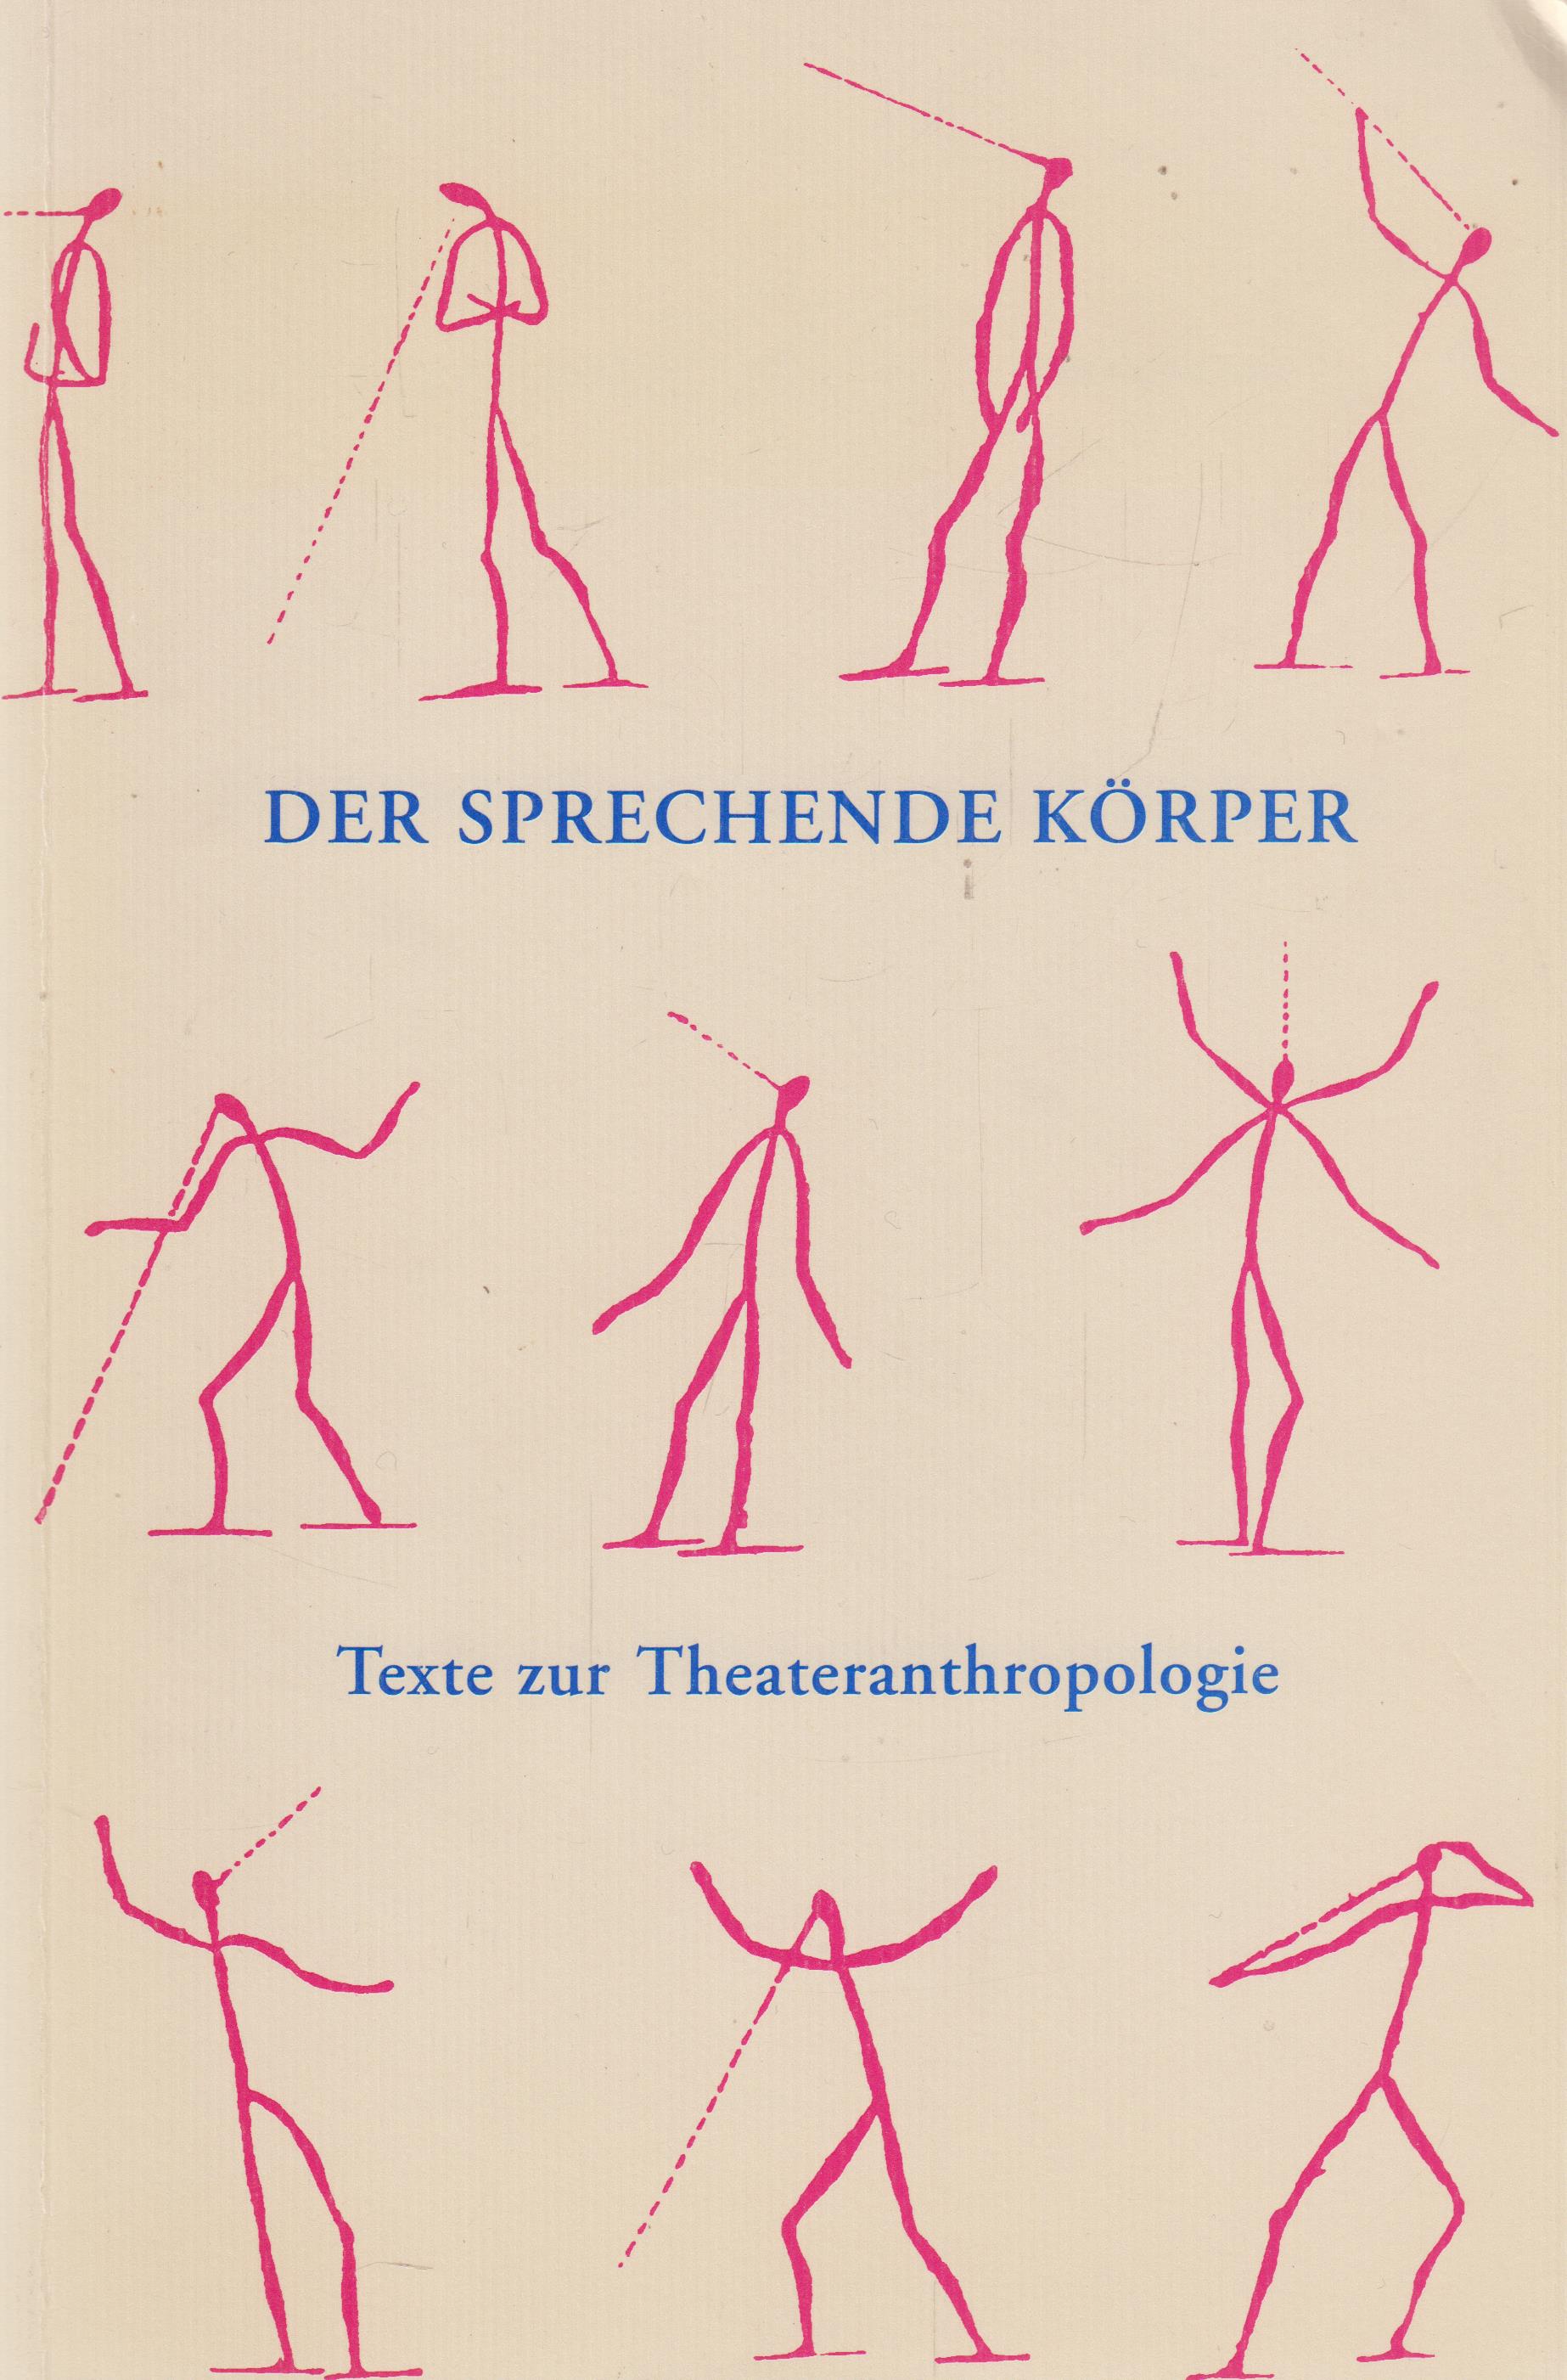 Der sprechende Körper Texte zur Theateranthropologie - Pfaff, Walter, Erika Keil  und Beat Schläpfer